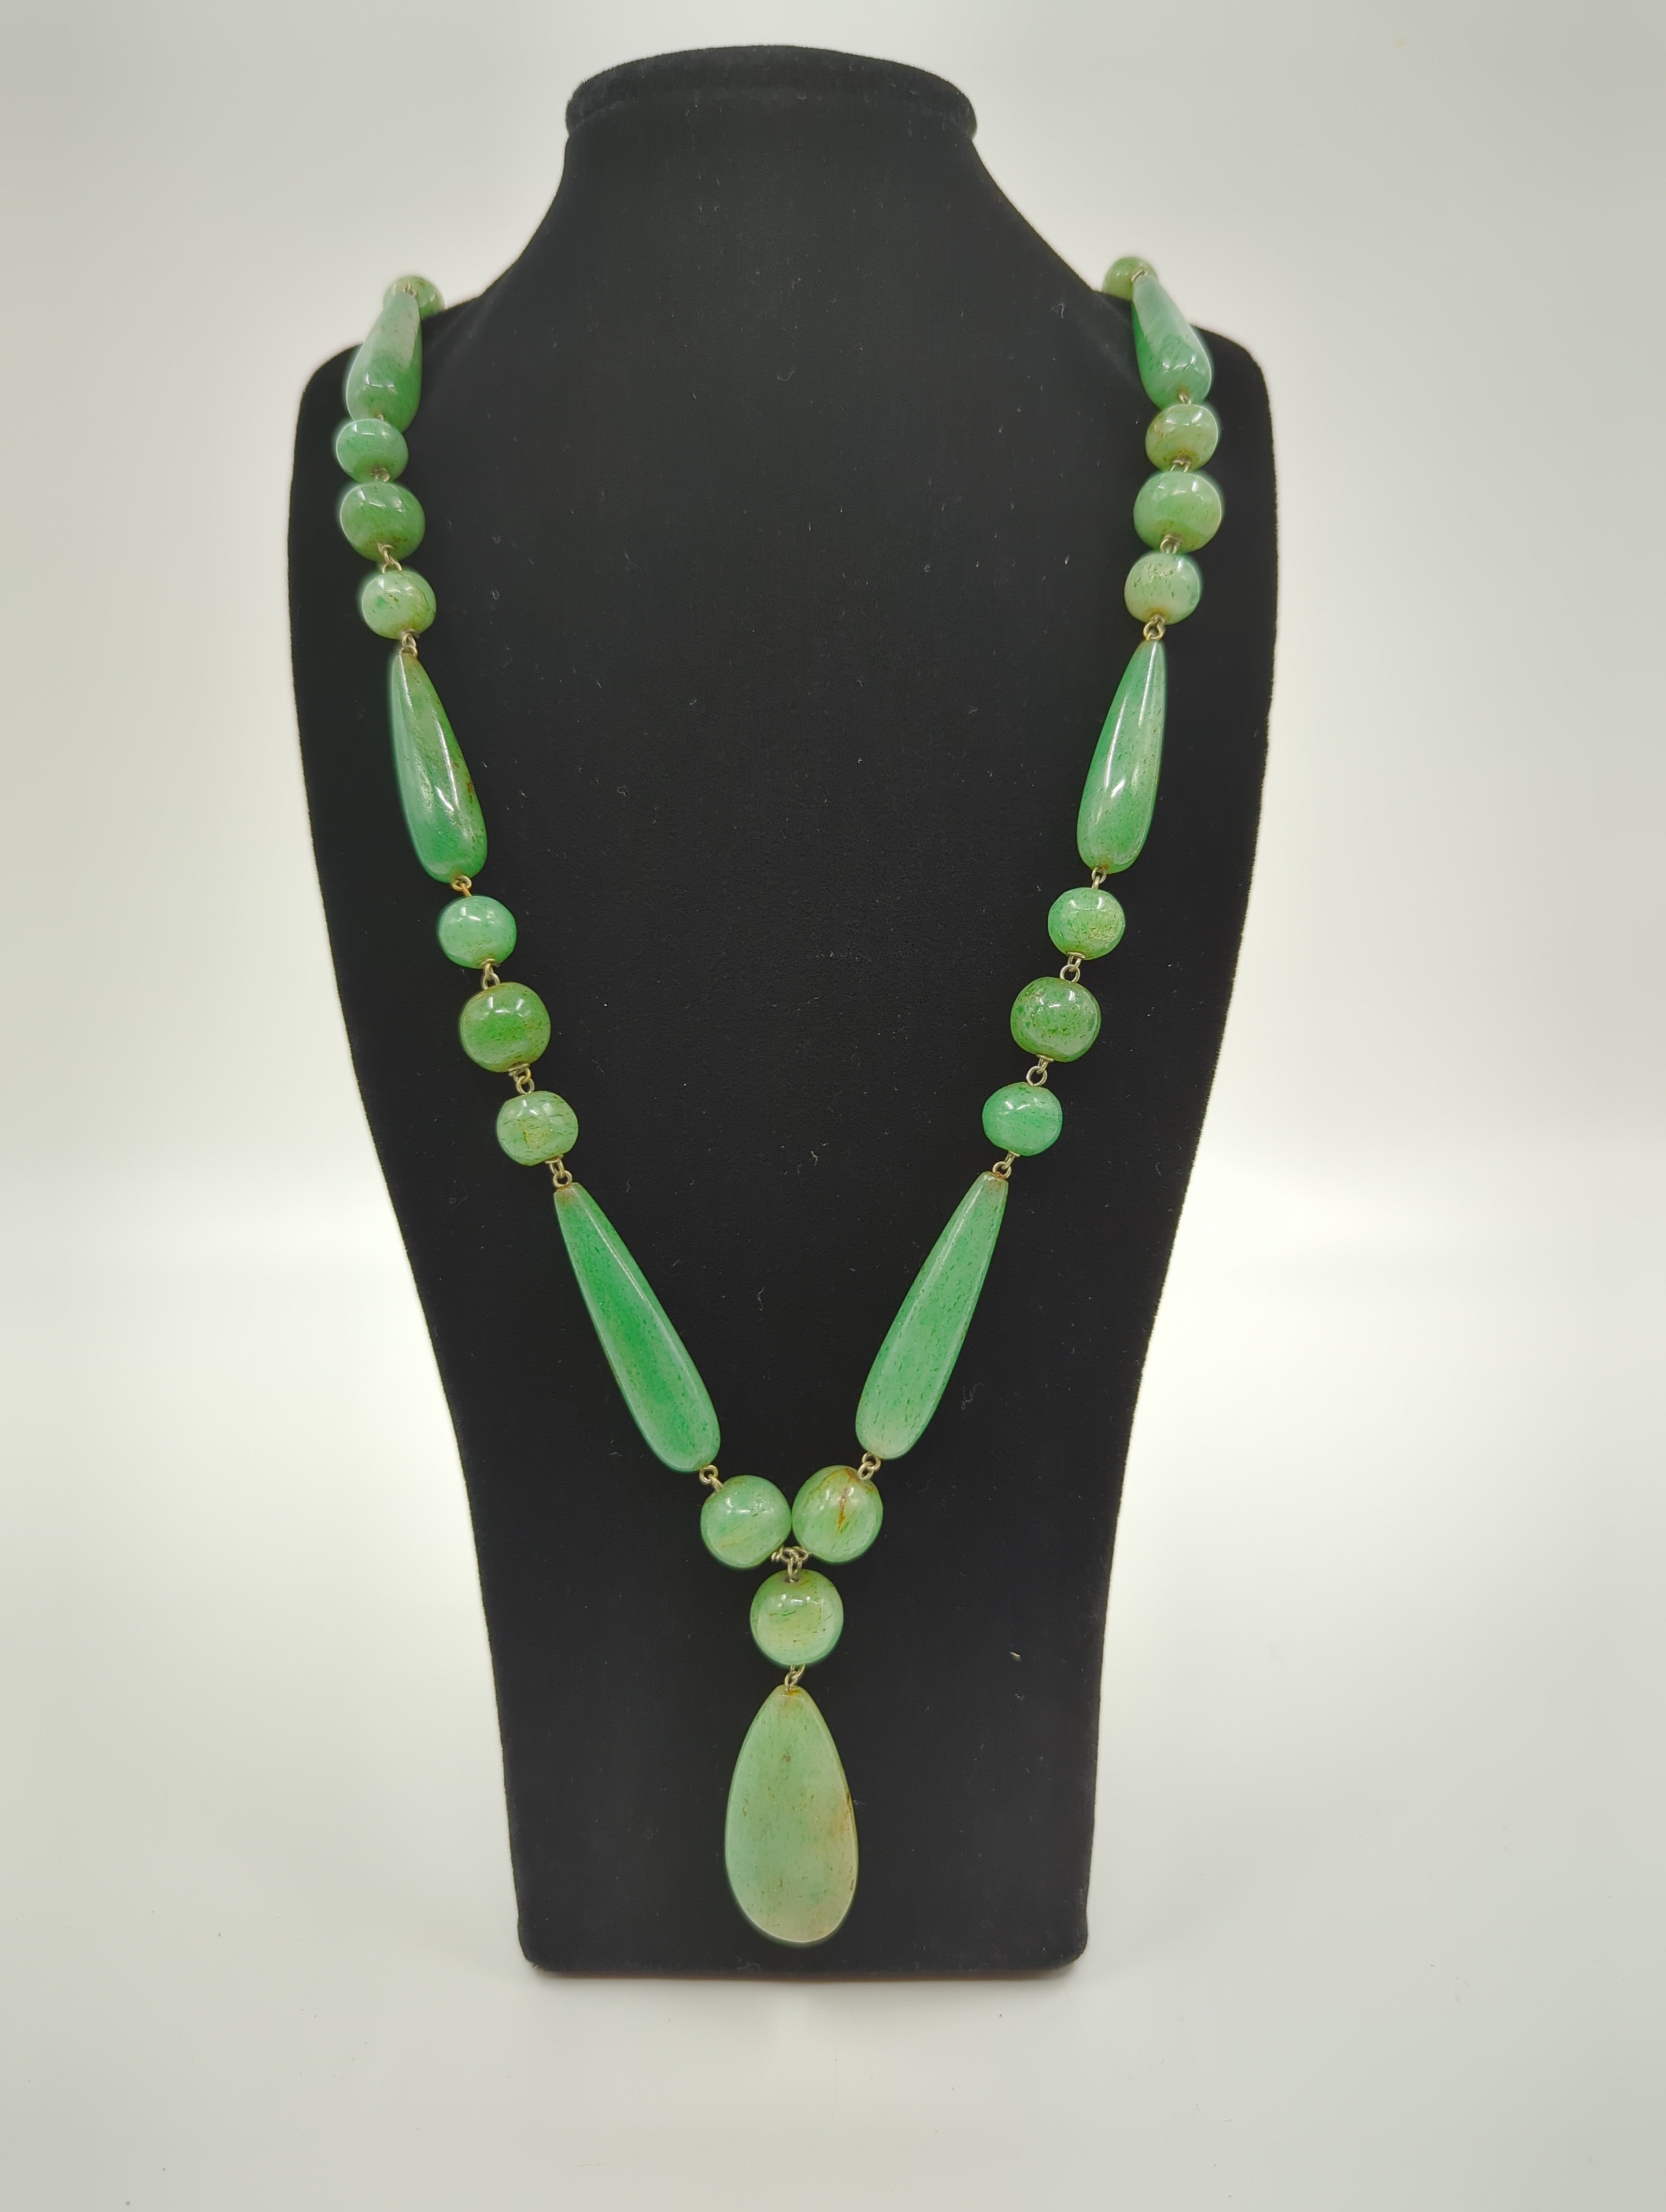 Diese Halskette aus grüner Nephrit-Jade mit Anhänger und Perlen aus dem späten 19. Jahrhundert und einer Gesamtlänge von 32 Zoll ist ein vielseitiges und raffiniertes Accessoire. Die Perlen sind auf zarten, aber starken Silberdrähten